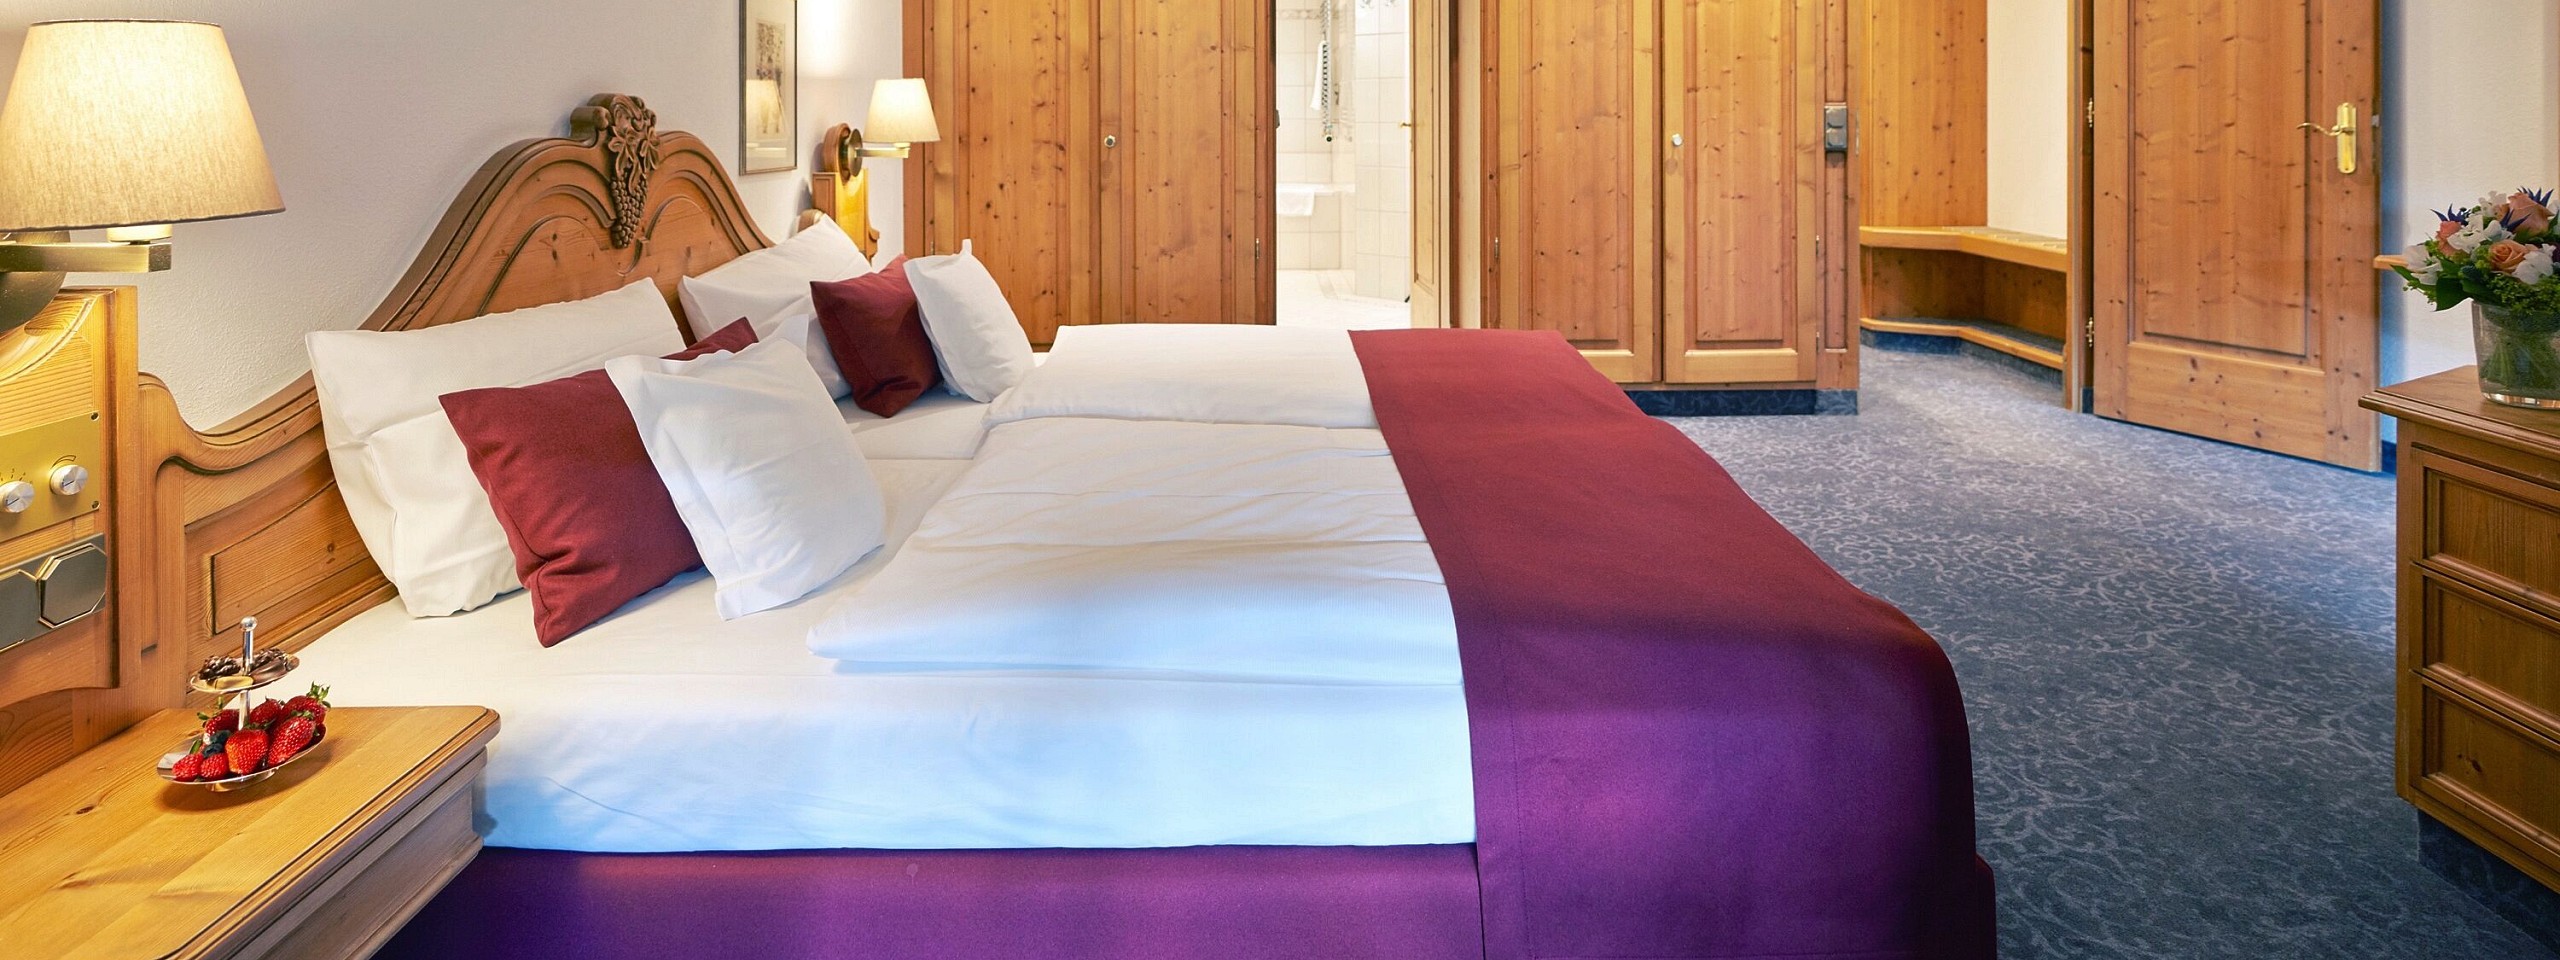 Doppelbett umgeben von hölzernen Möbeln im Hotelzimmer im Schwarzwald.